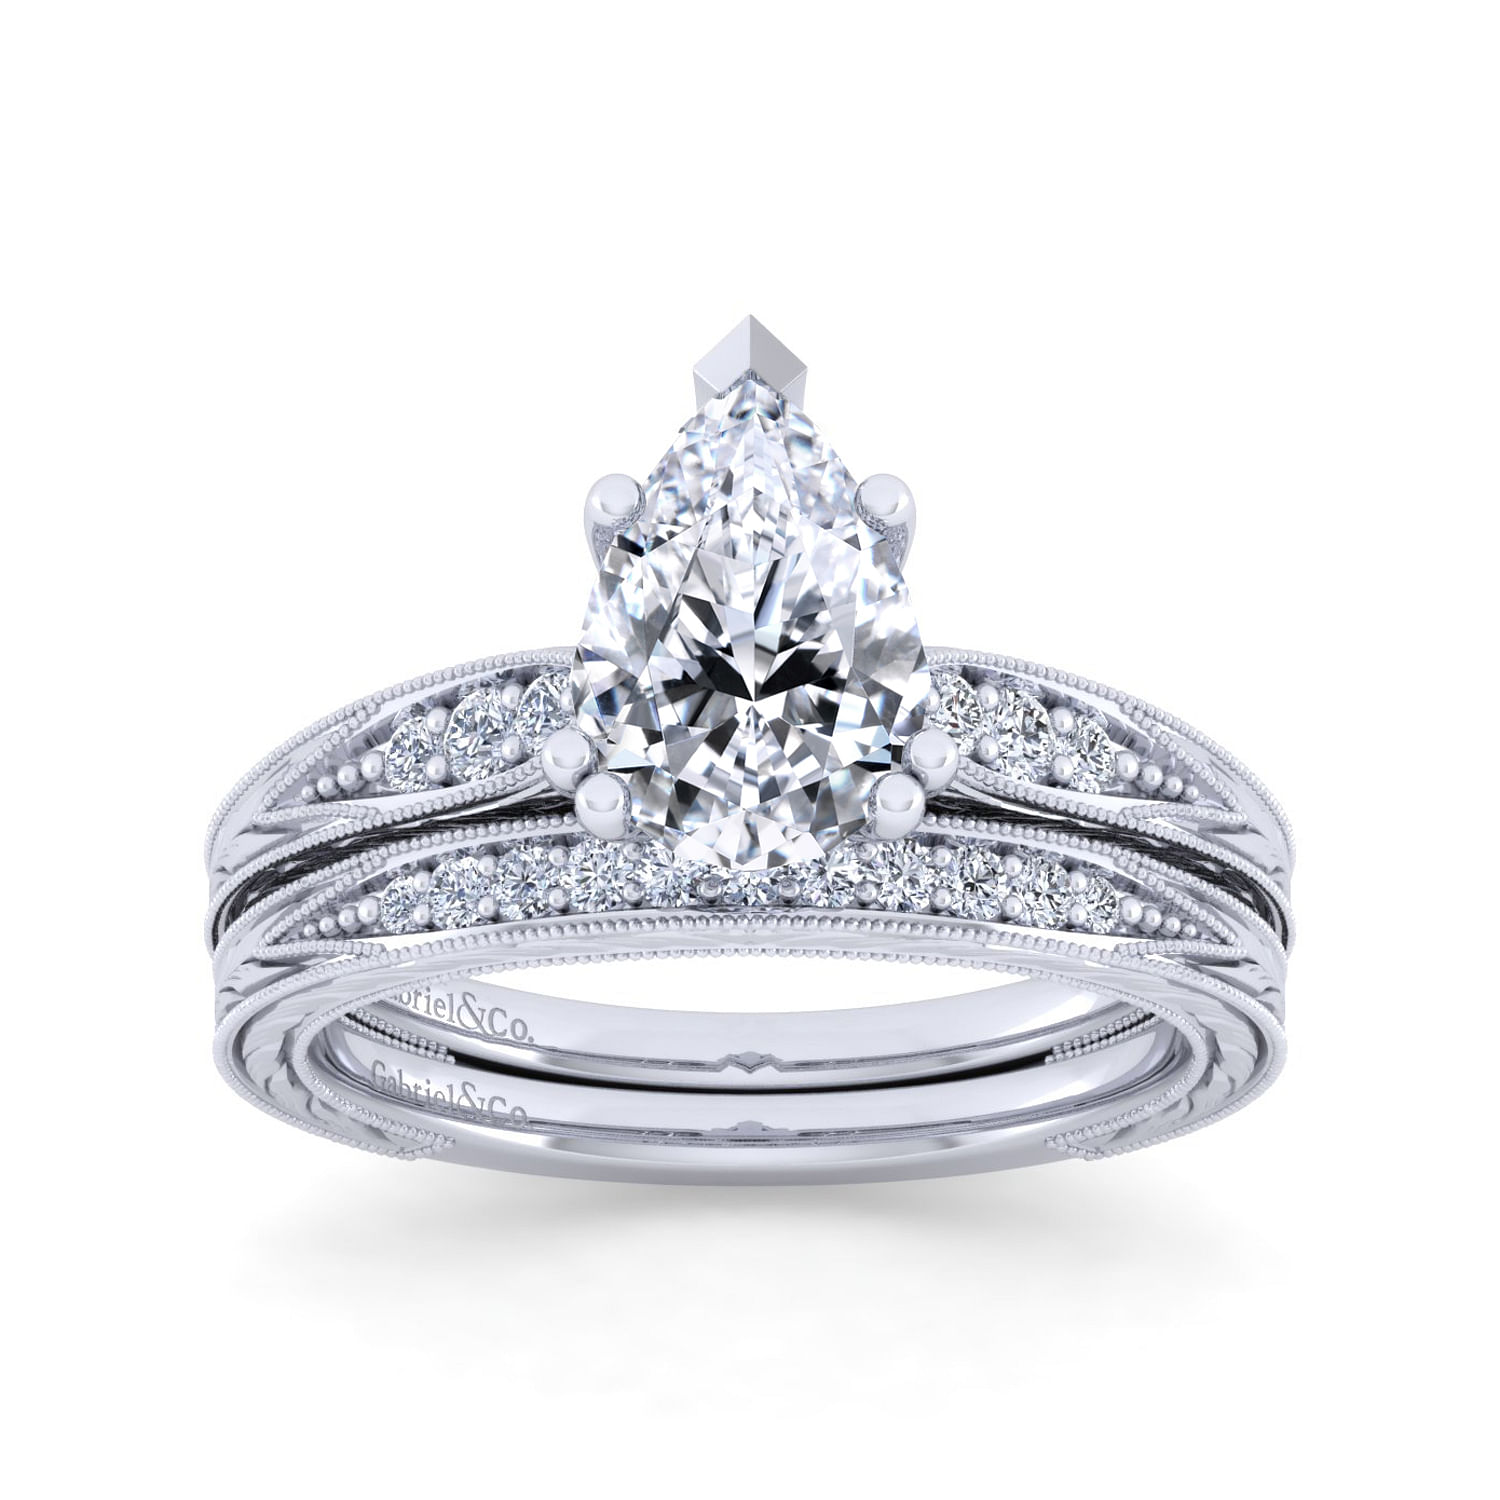 Vintage Inspired 14K White Gold Pear Shape Diamond Engagement Ring